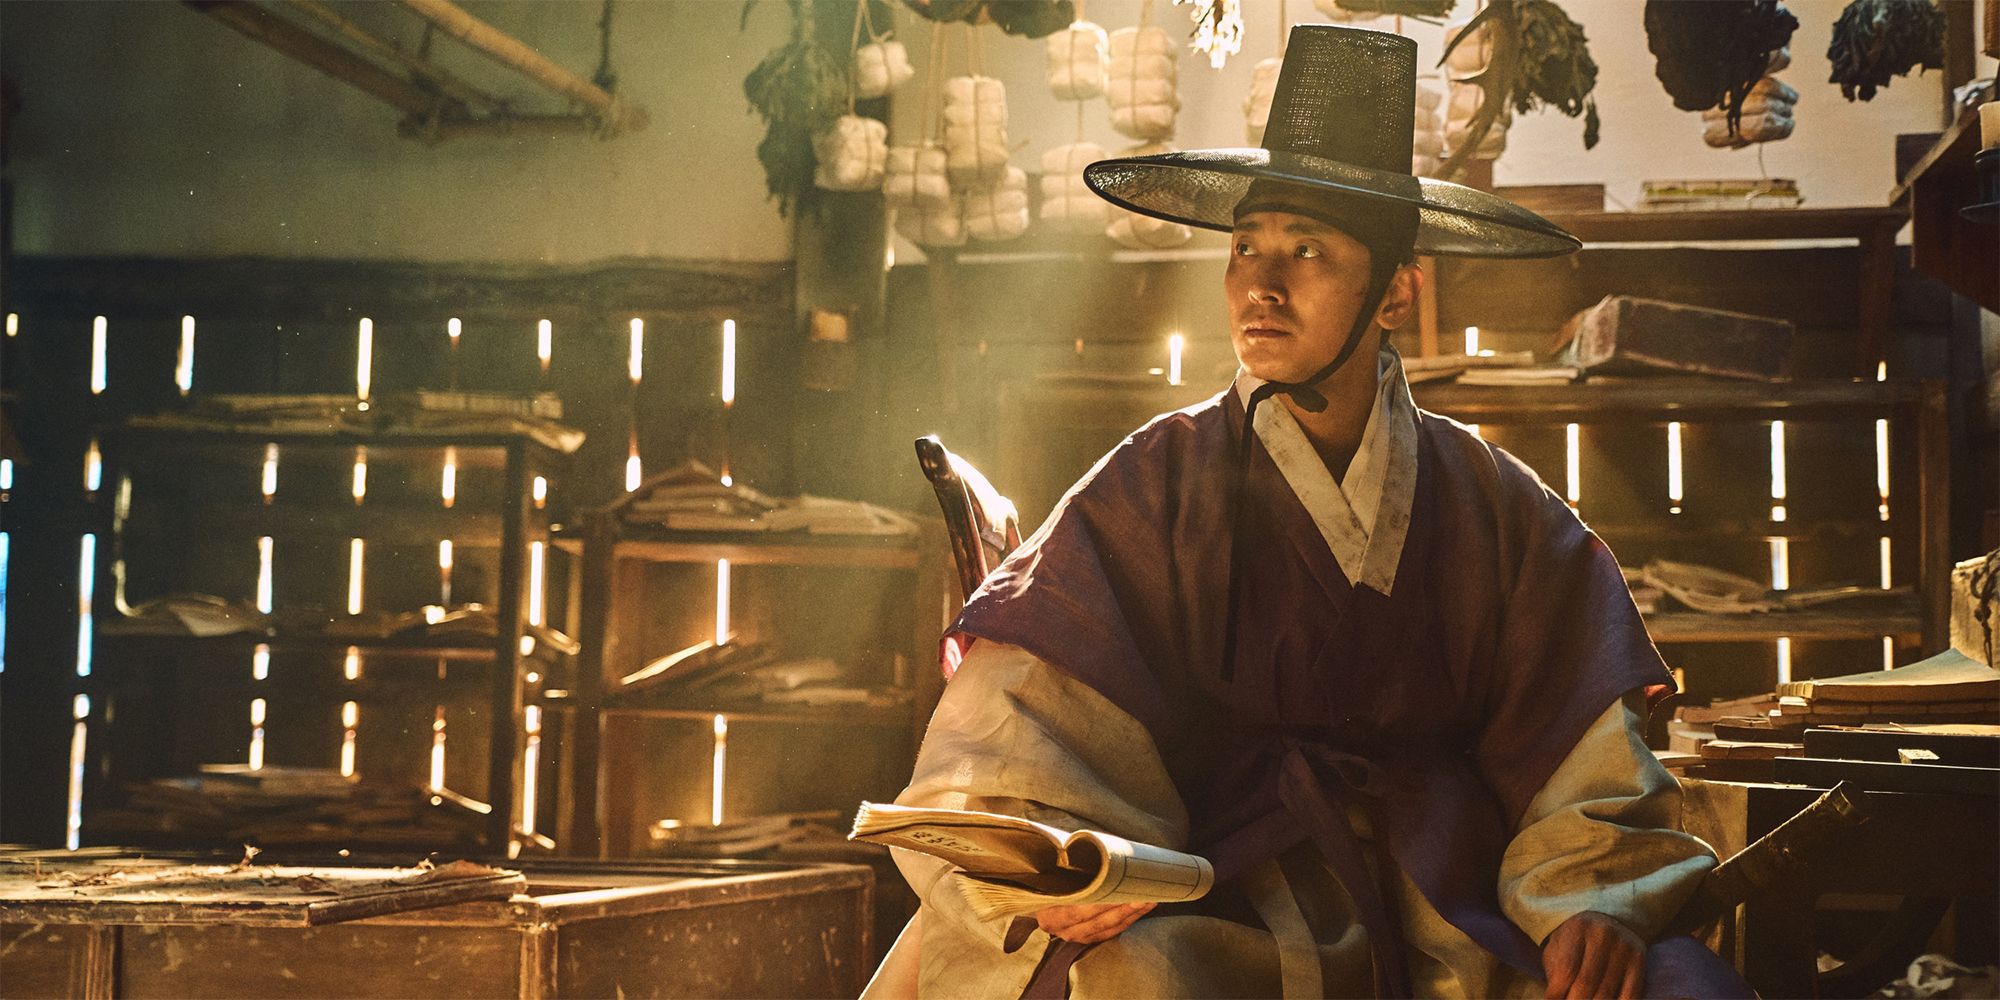 Ju Jihoon as Lee Chang in Netflix's Kingdom